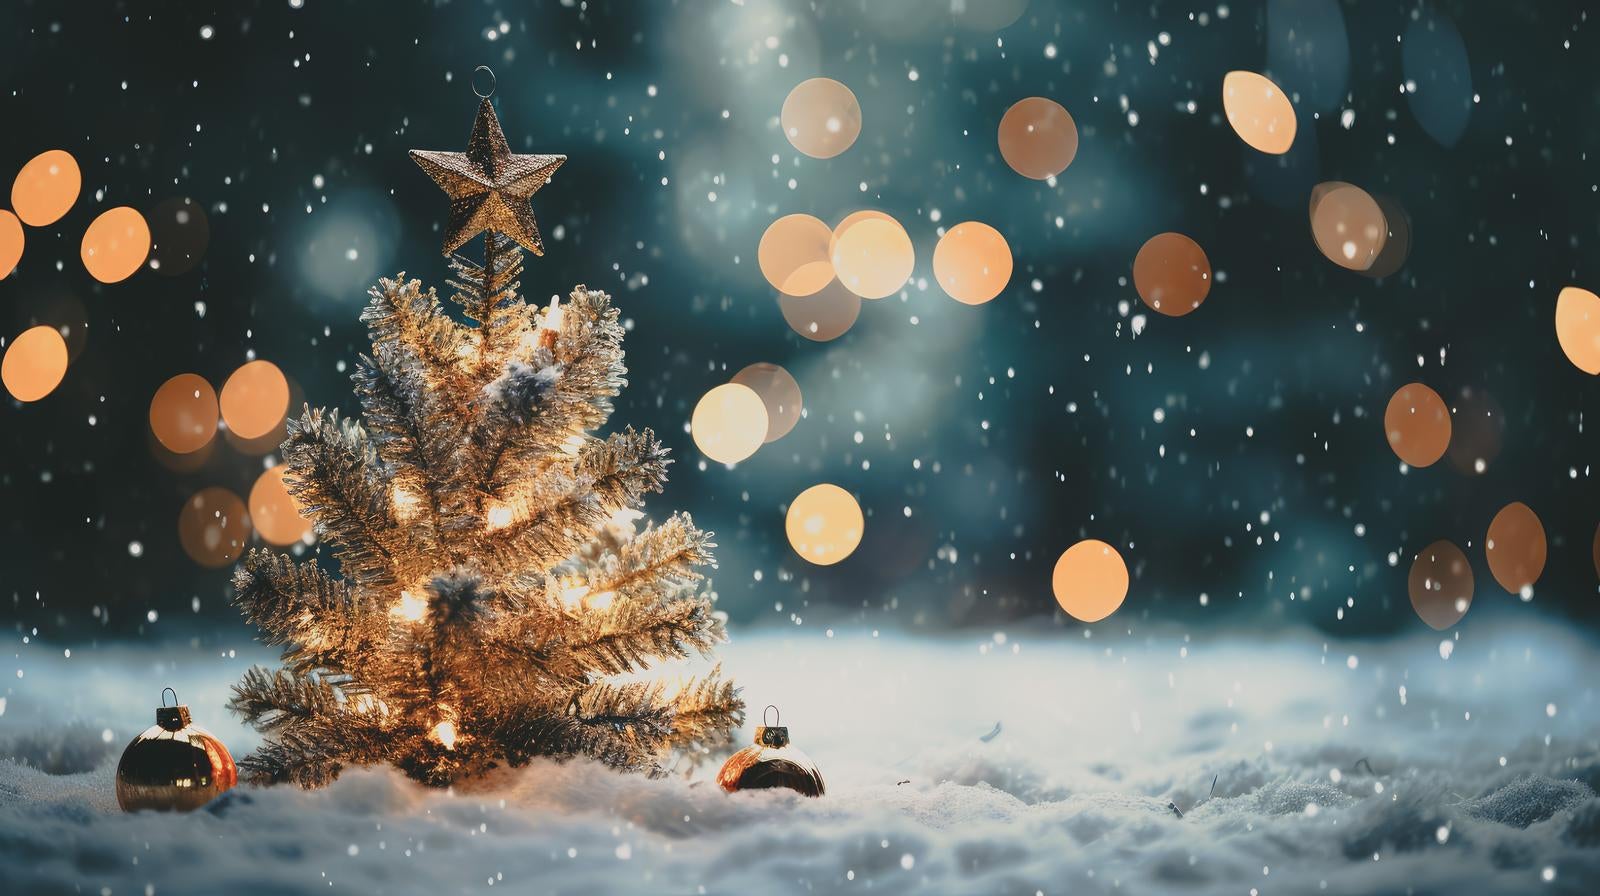 「キラキラライトアップのクリスマスツリー」の写真